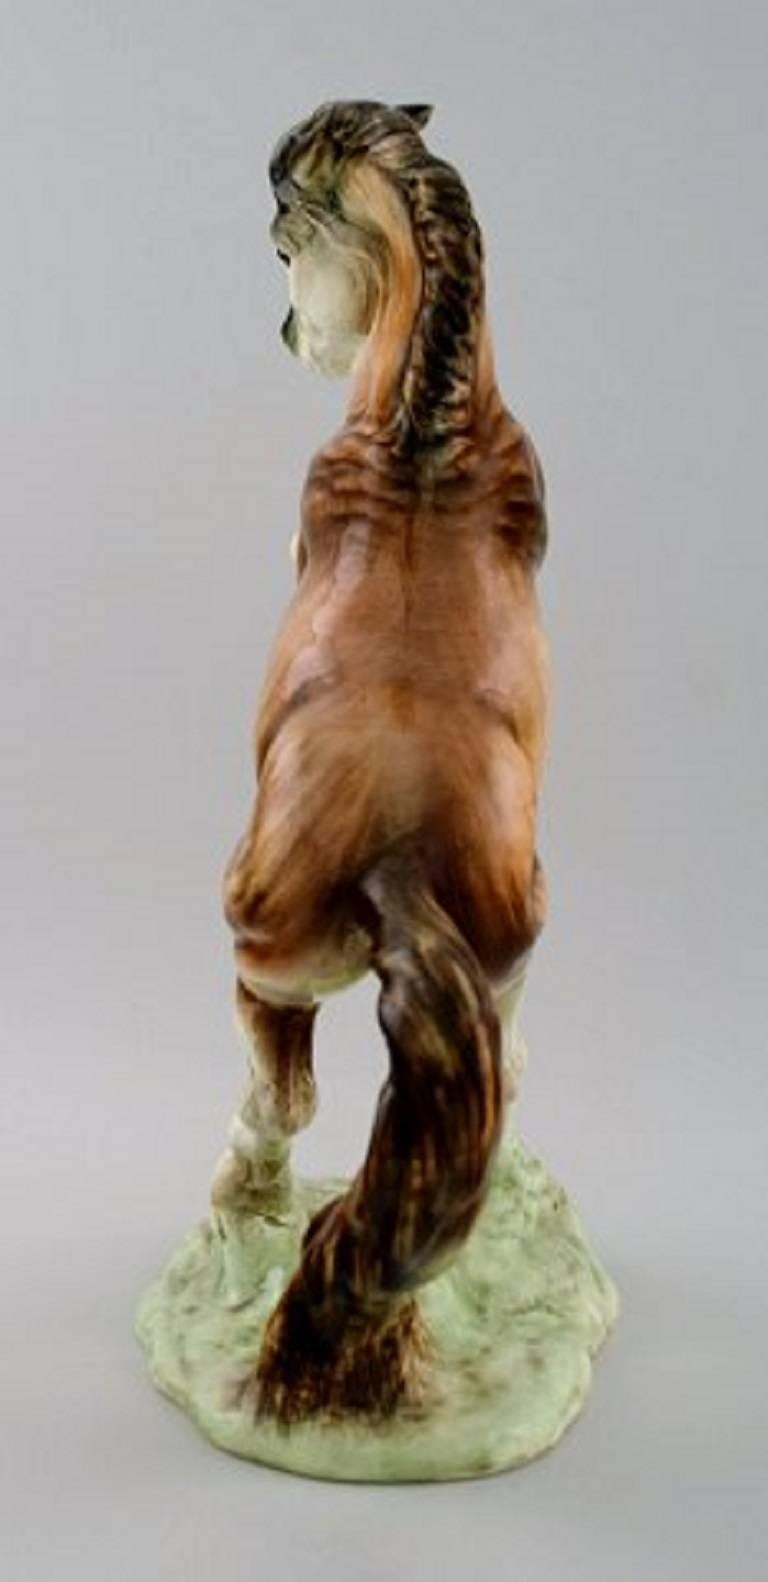 Große Goldschneider-Figur aus Porzellan, sich aufbäumendes Pferd.

Maße 32 x 22 cm.

In perfektem Zustand.

Gezeichnet: Goldschneider, Hergestellt in England.